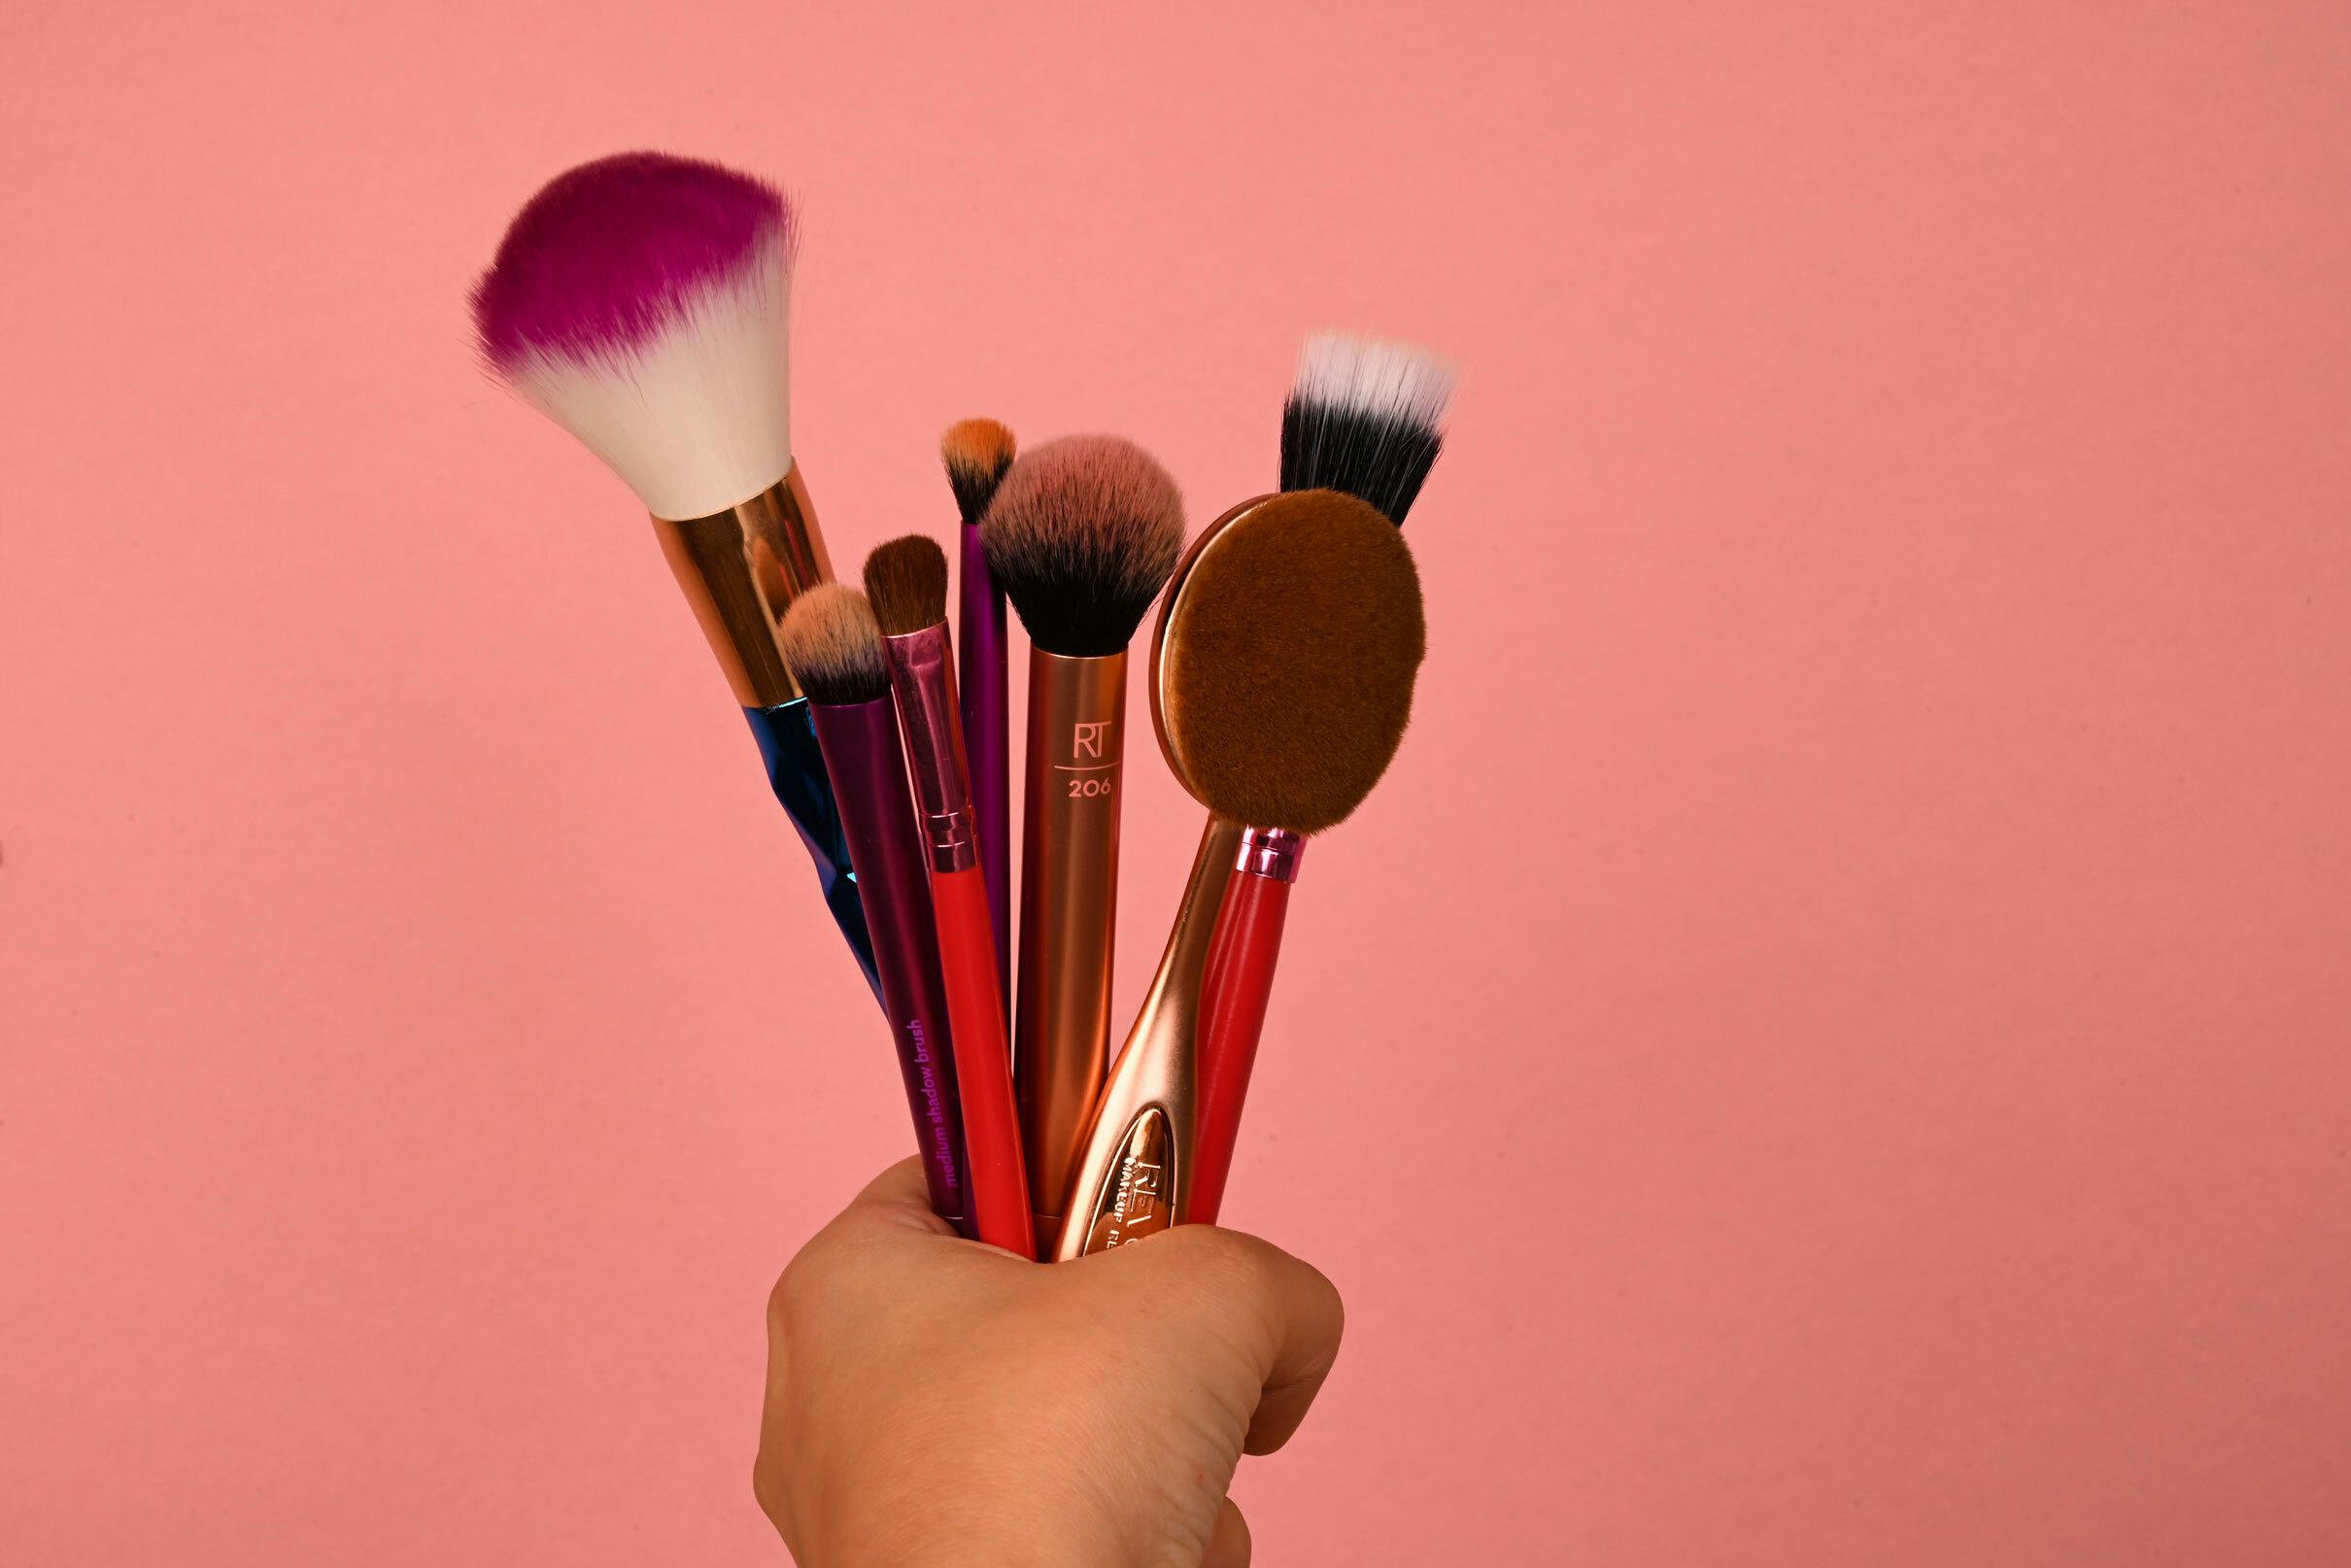 du er Narabar Identificere Tutorial video: Sådan renser du dine makeupbørster